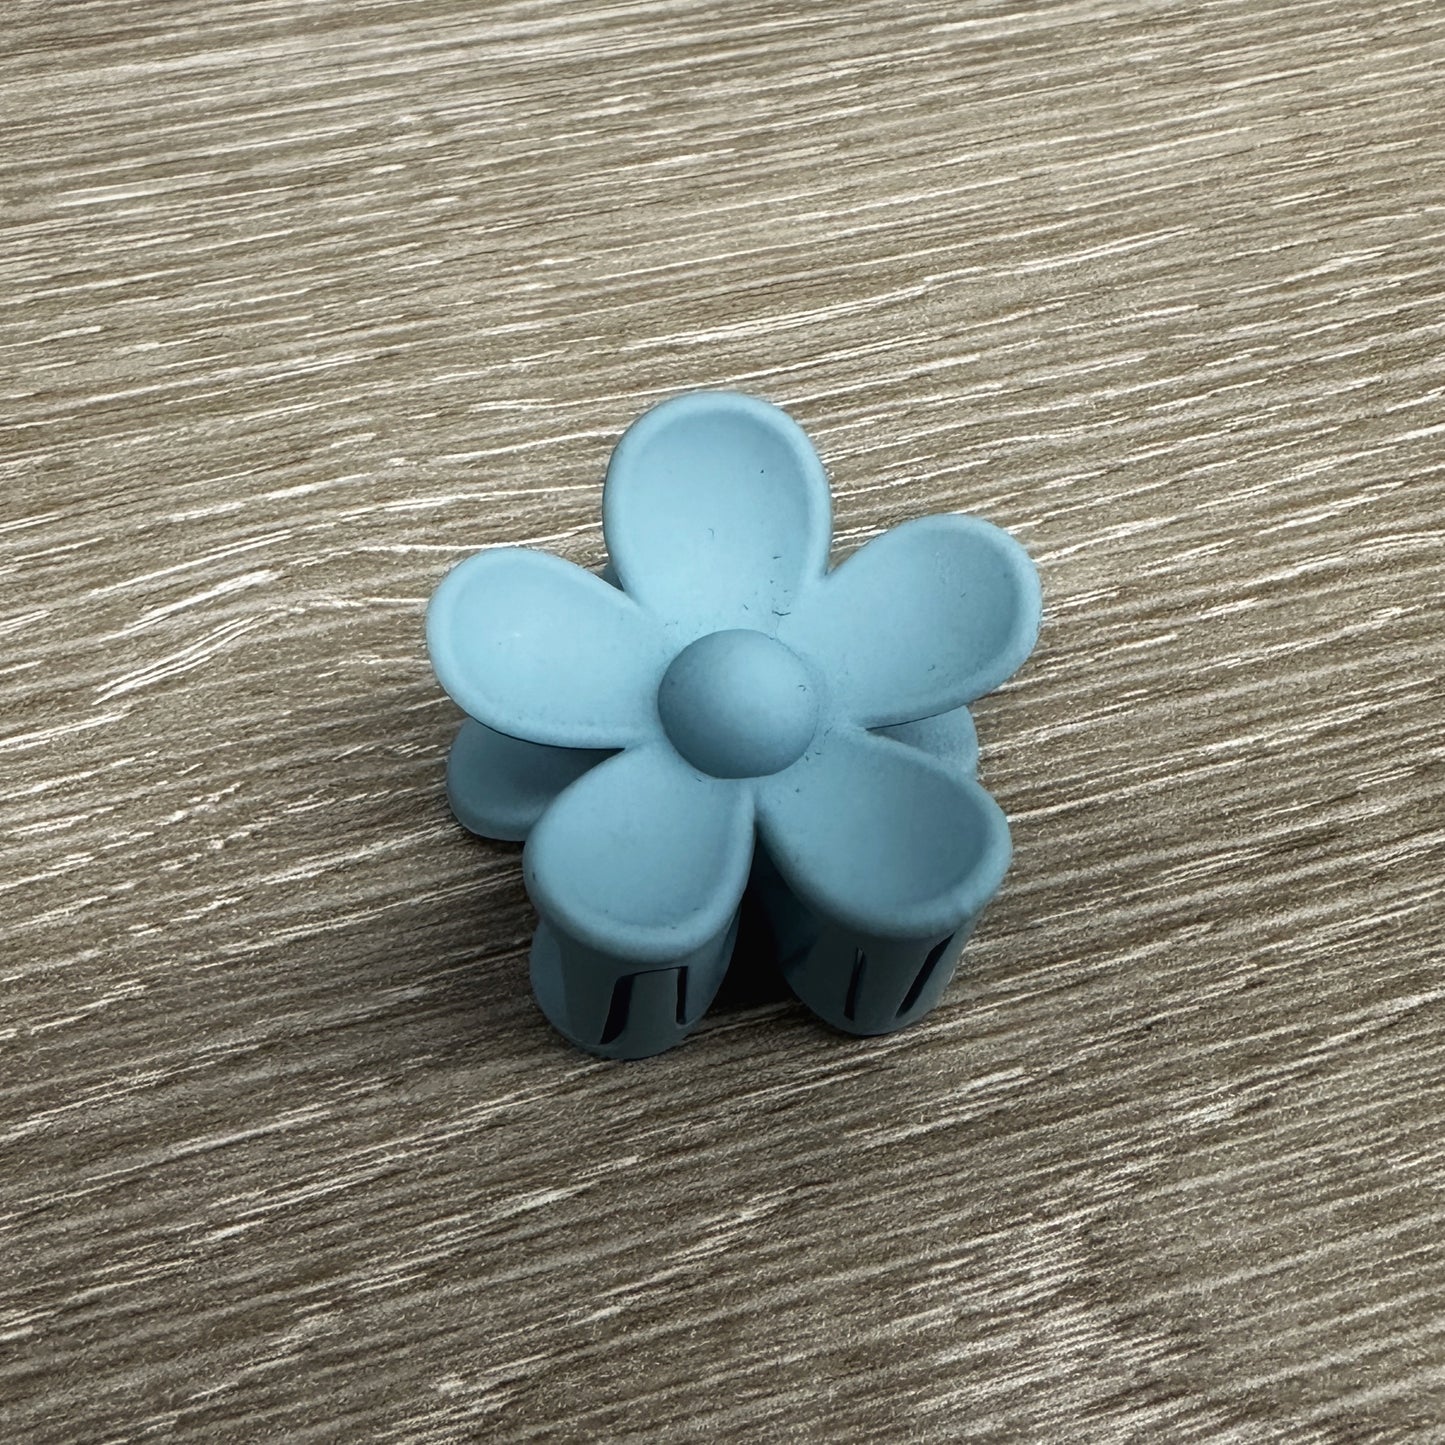 Mini Flower Clips